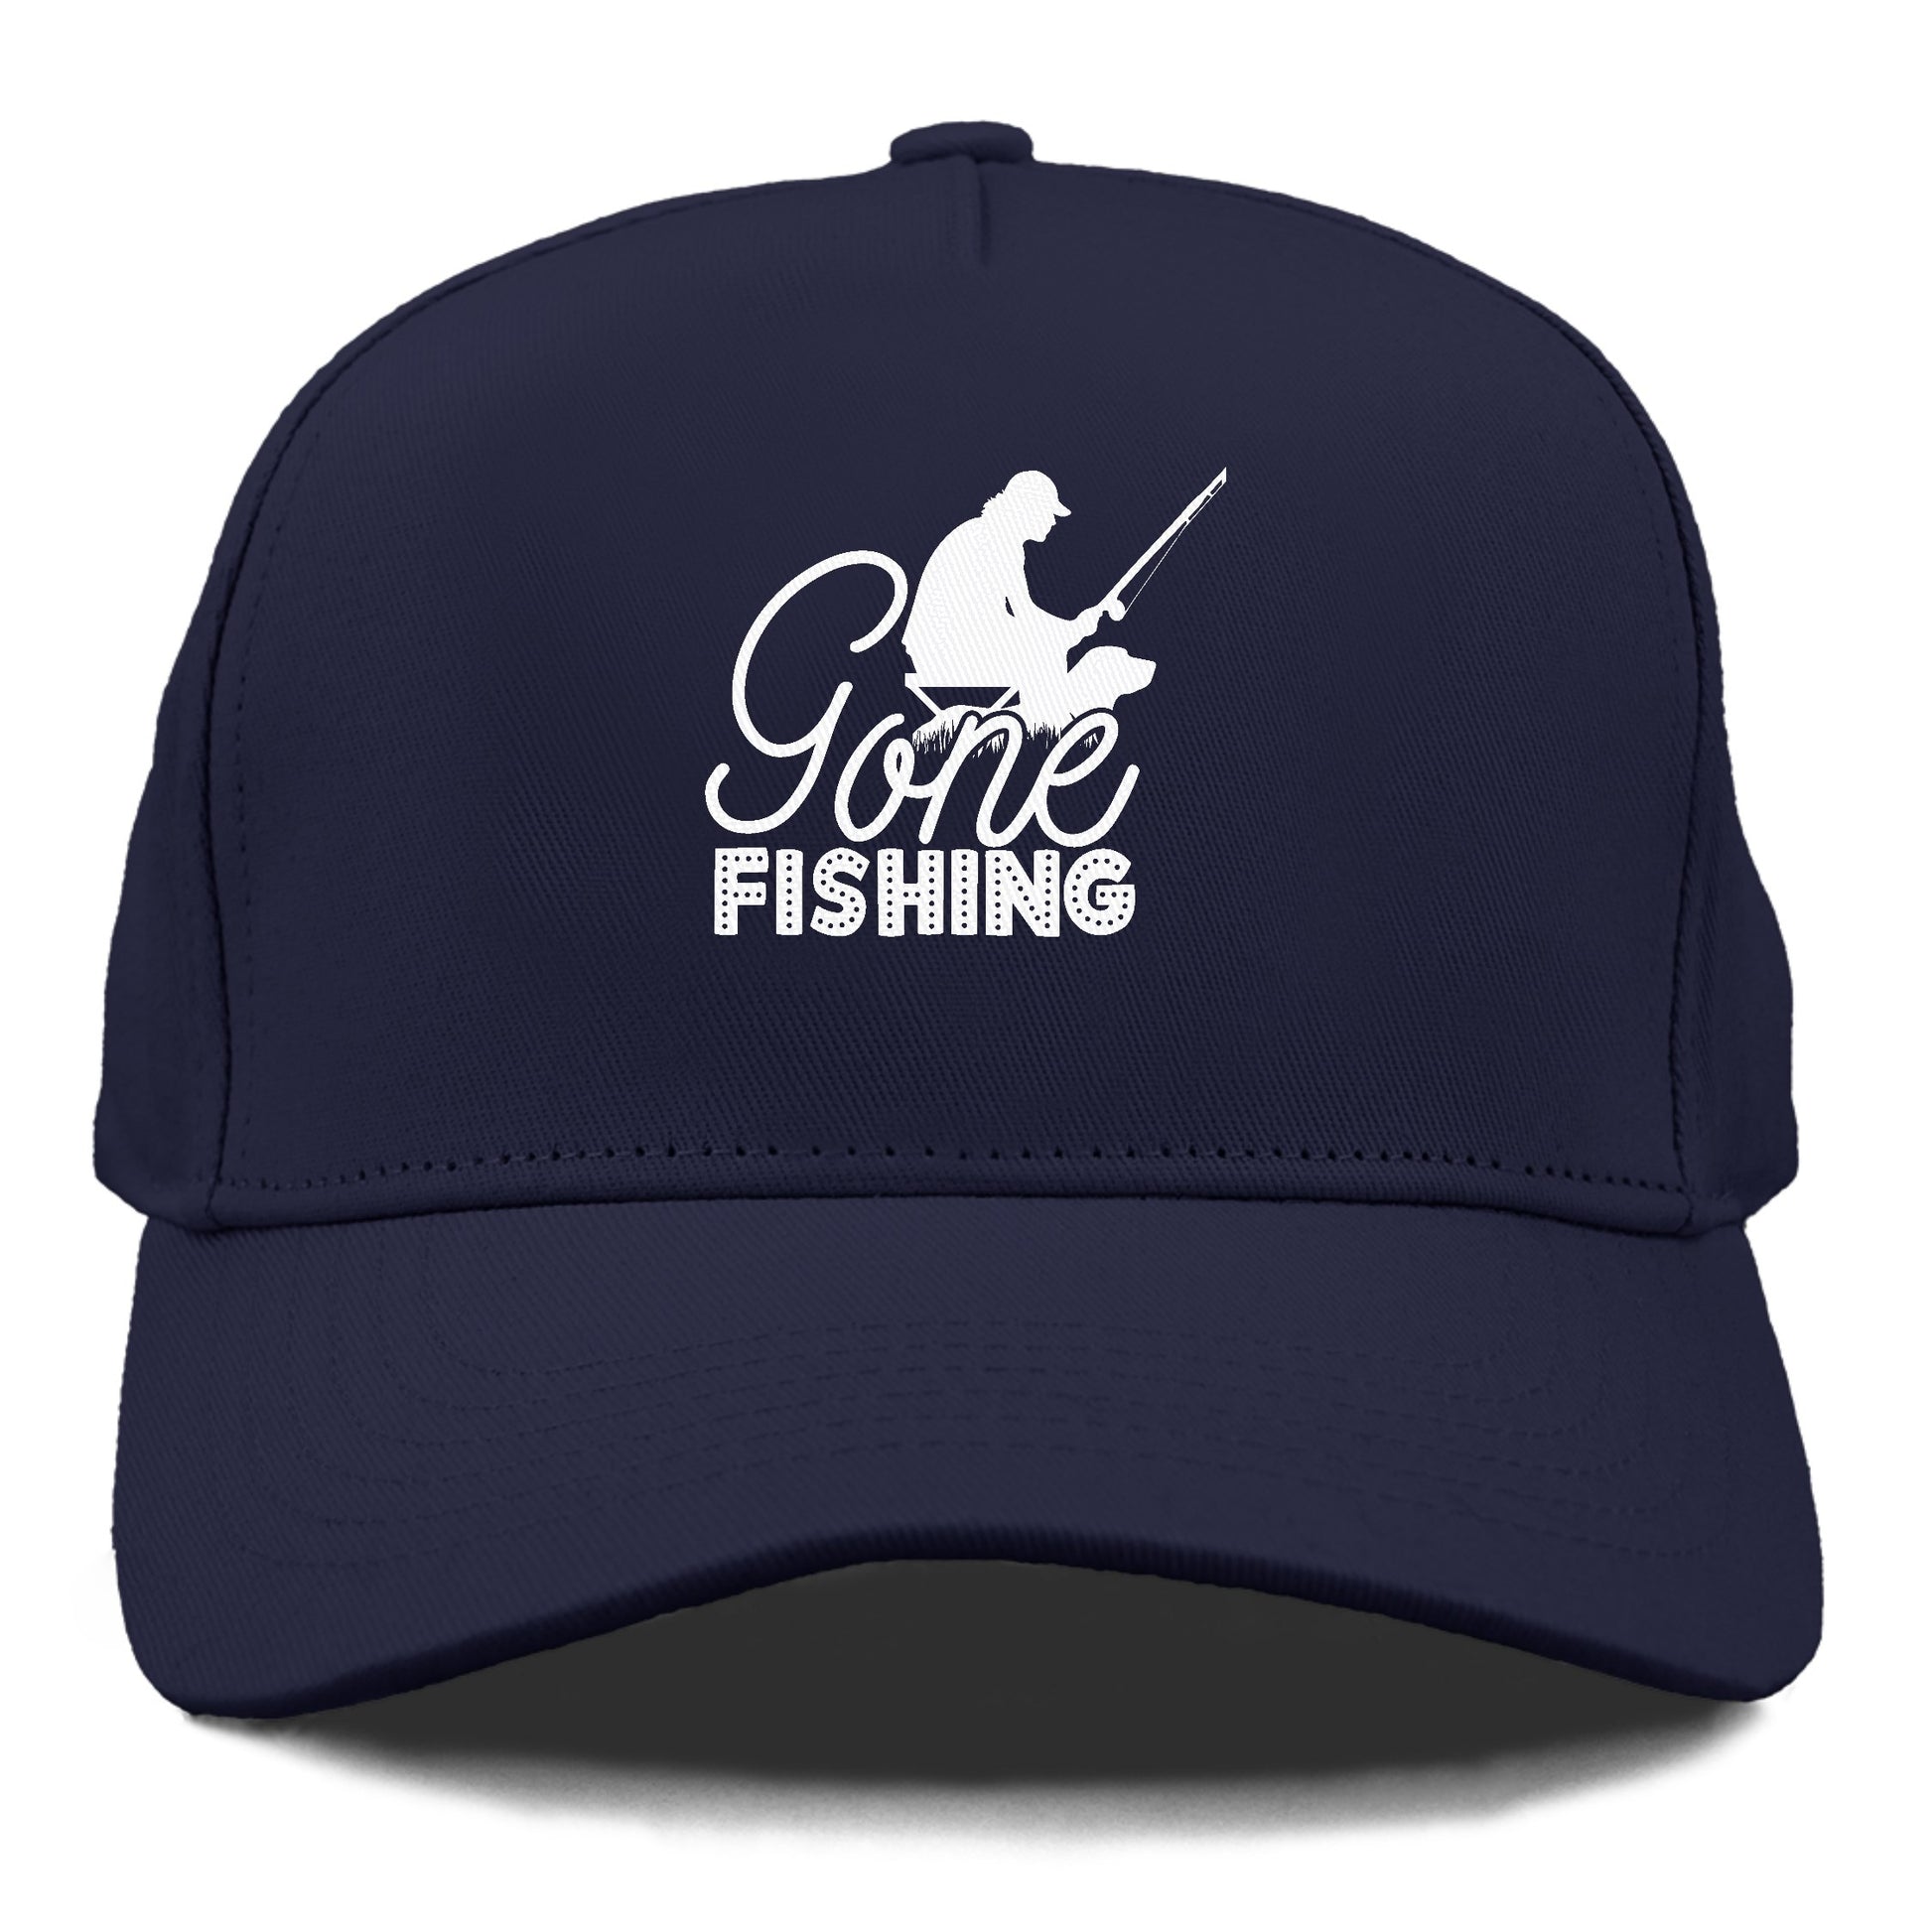 Gone Fishing Cap – Pandaize